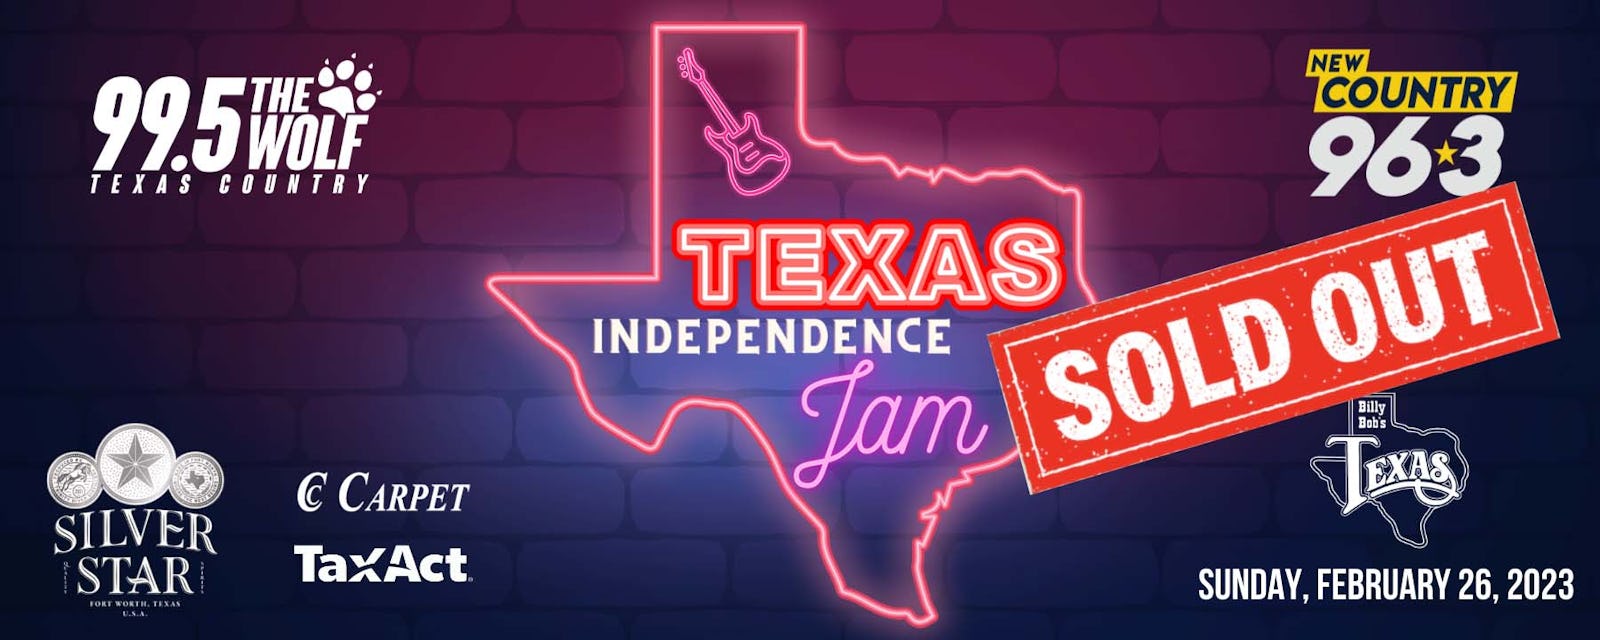 Texas Independence Jam Billy Bob's Texas